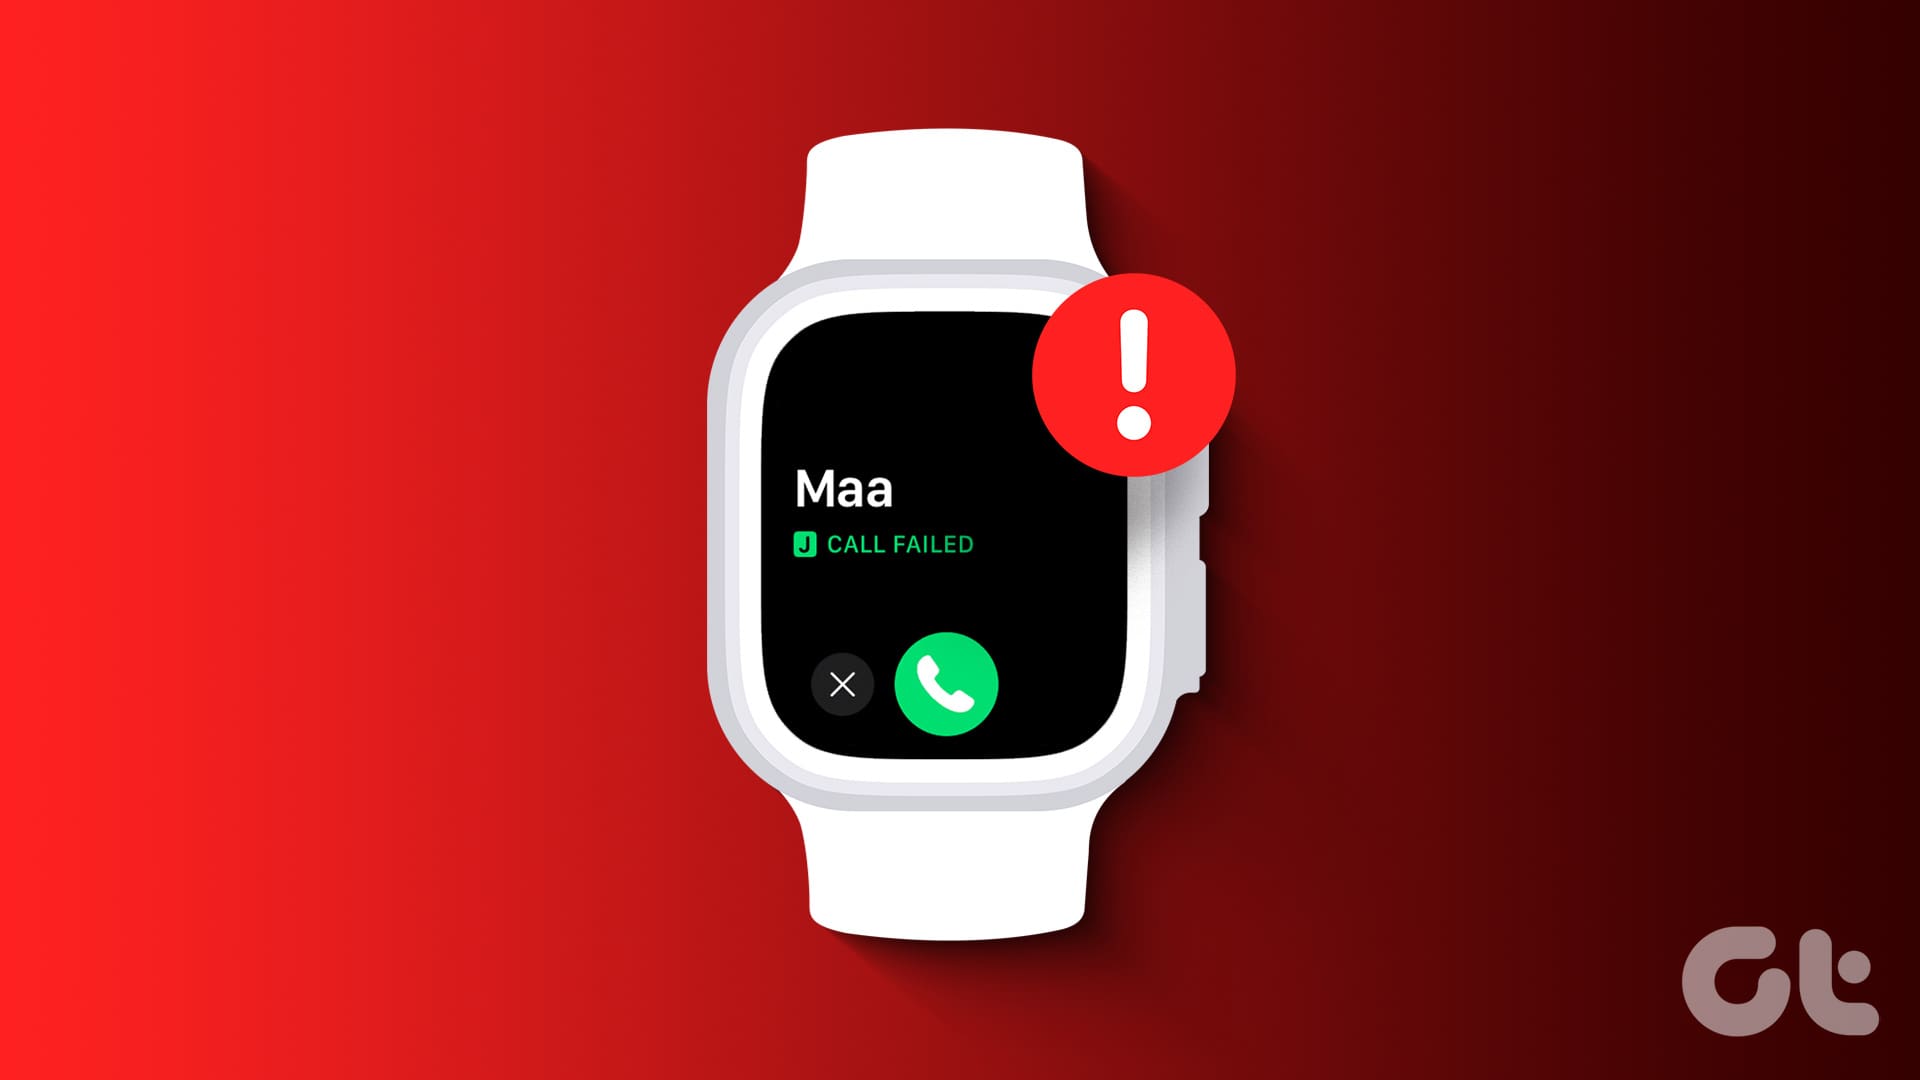 Call failed error on Apple Watch